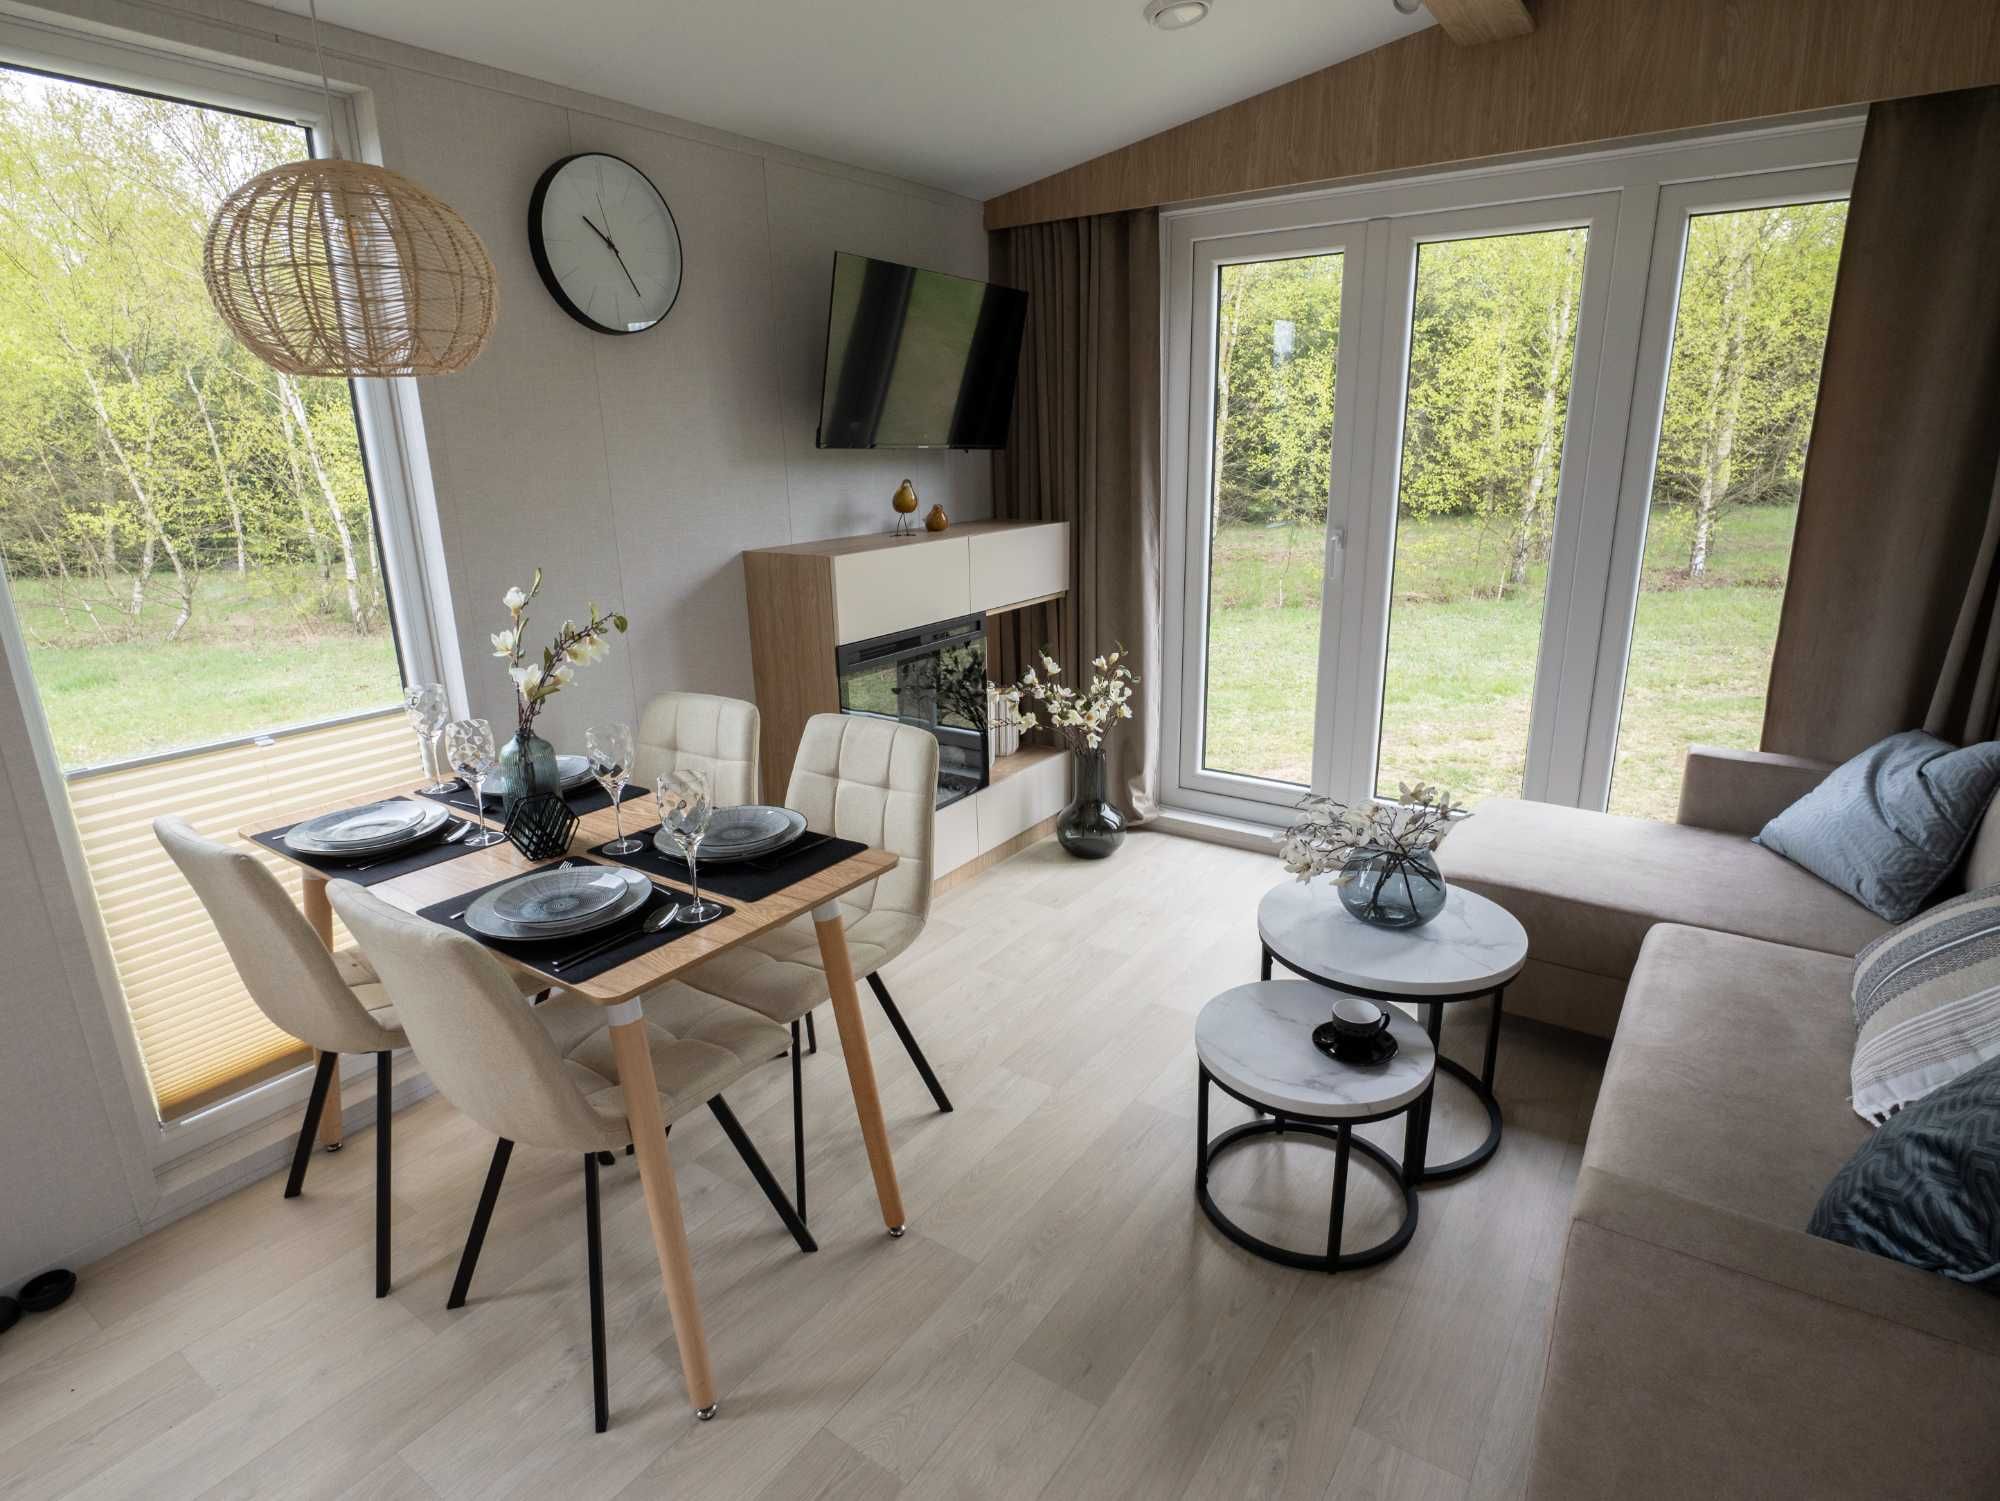 NOWY dom mobilny całoroczny KABO SPINEL domek holenderski OD RĘKI